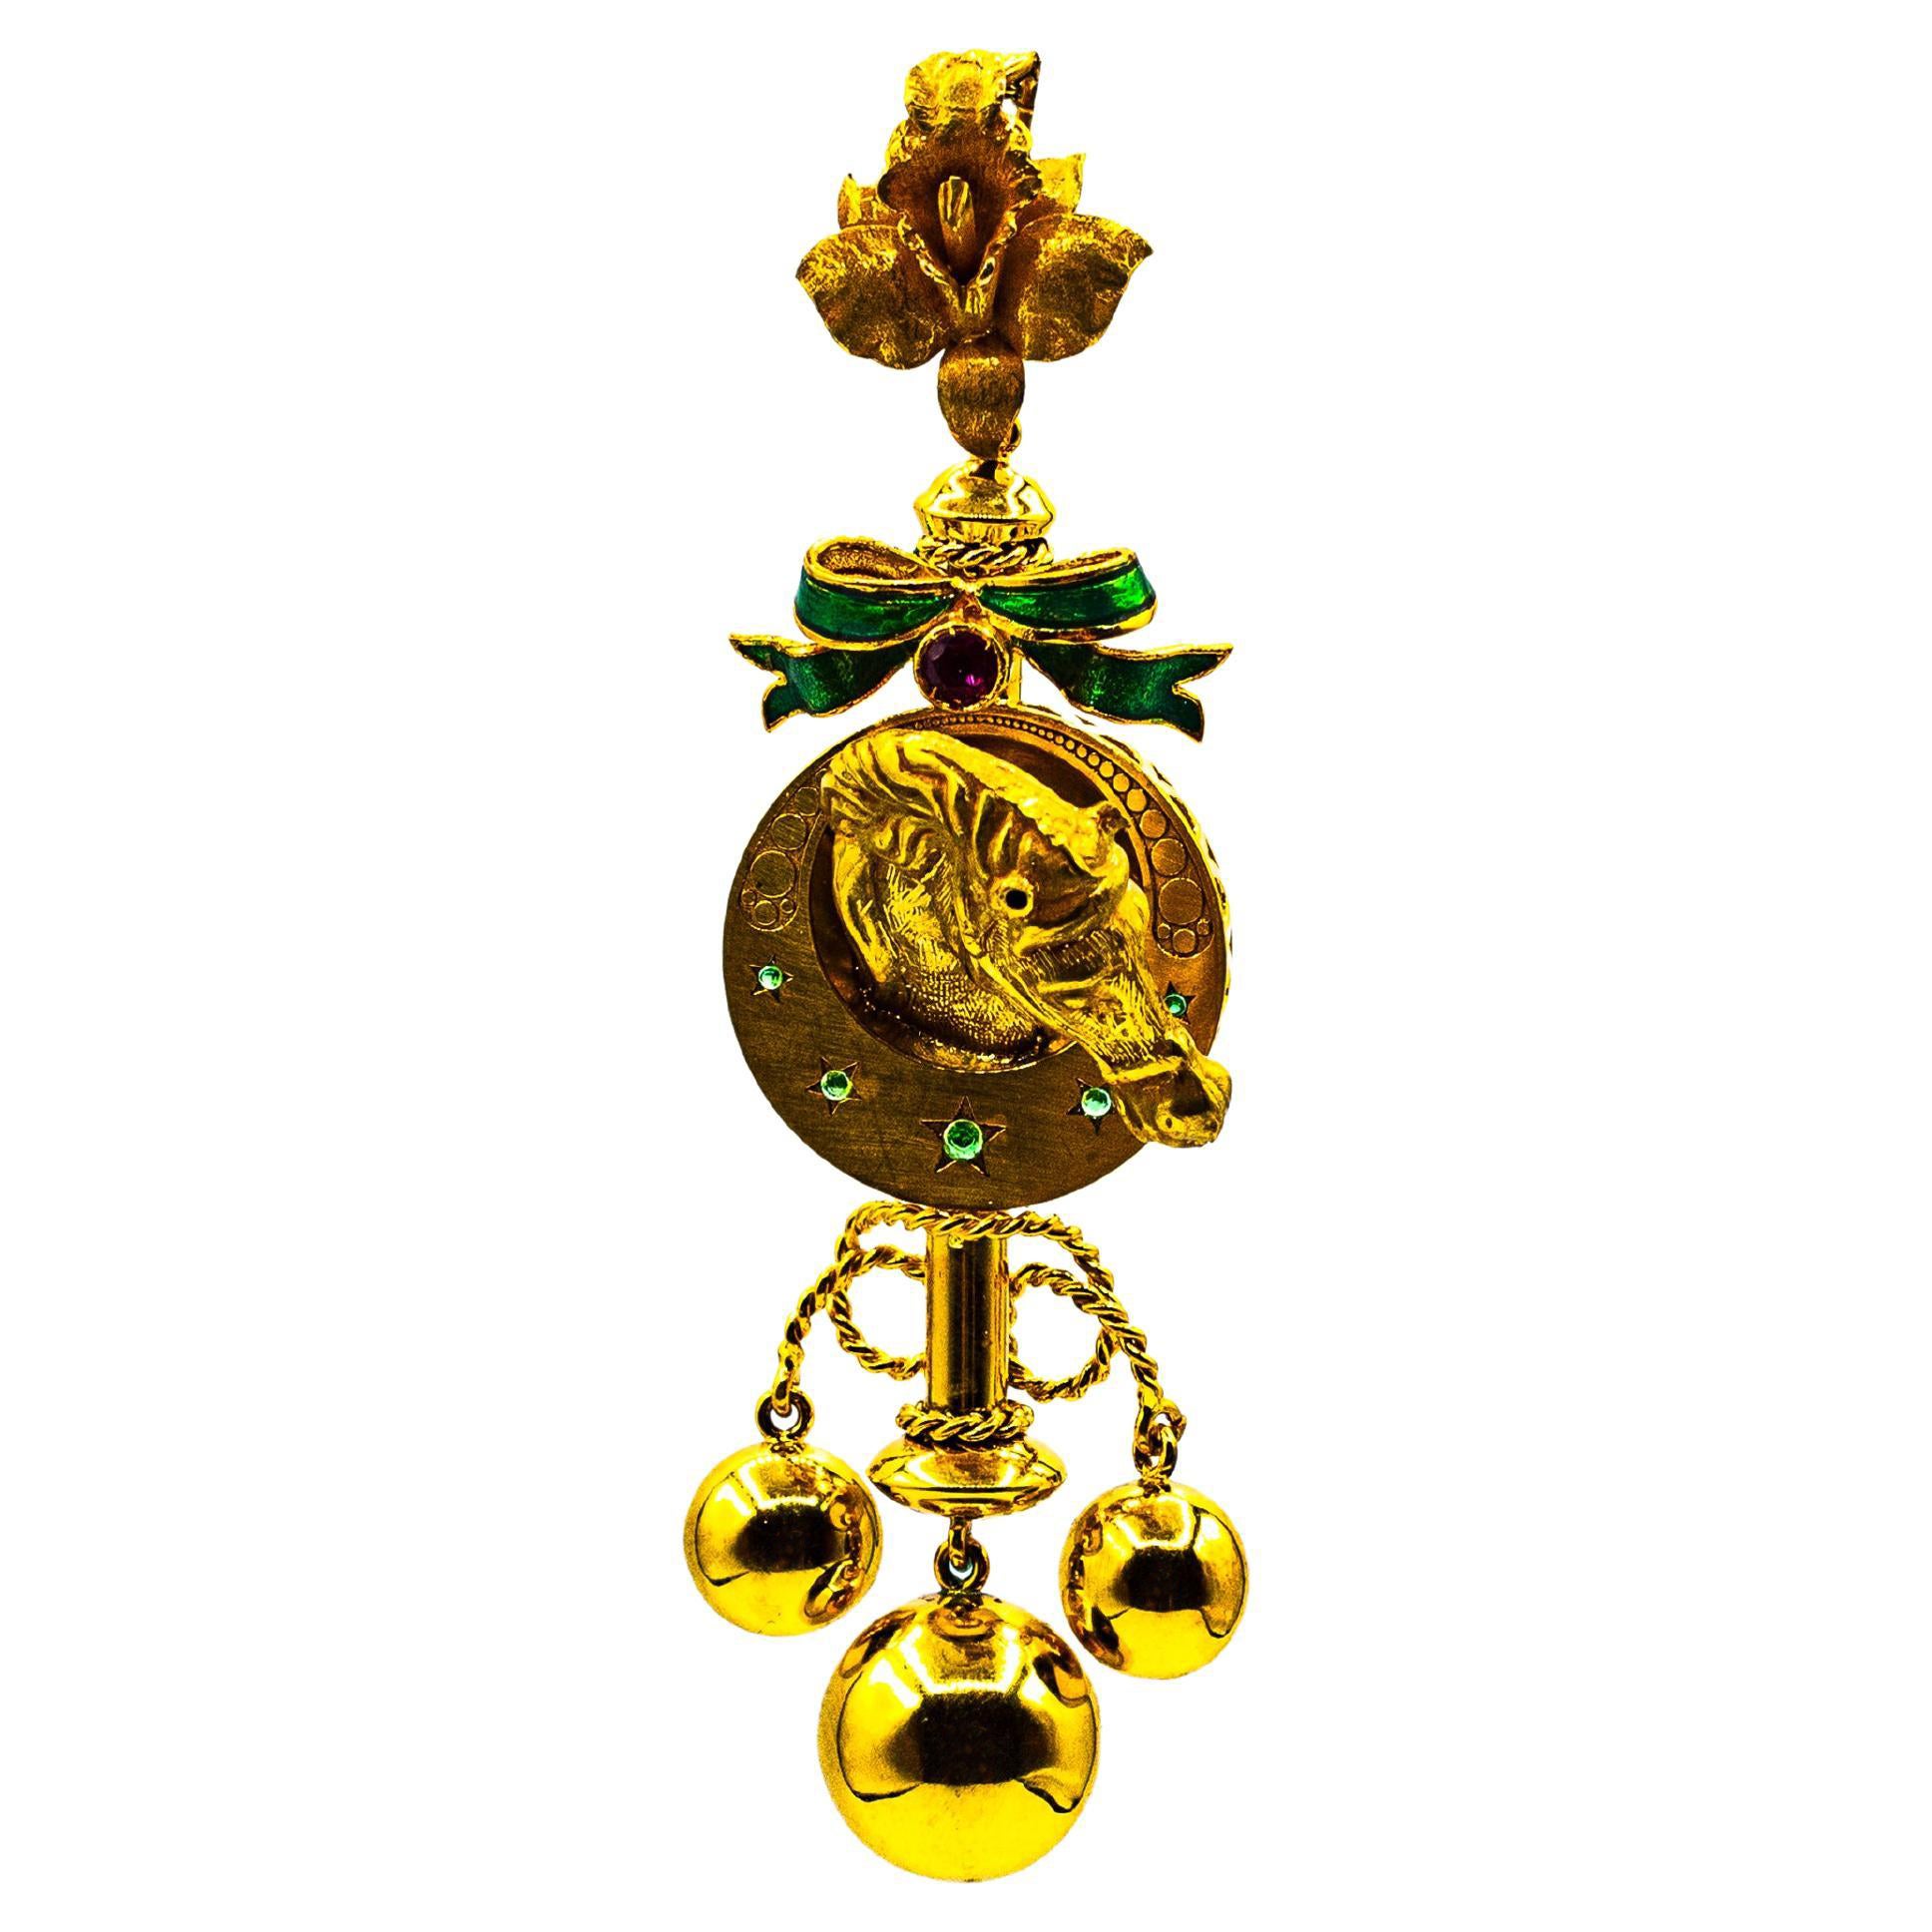 Collier pendentif « Horse » en or jaune émaillé et rubis de style Art nouveau